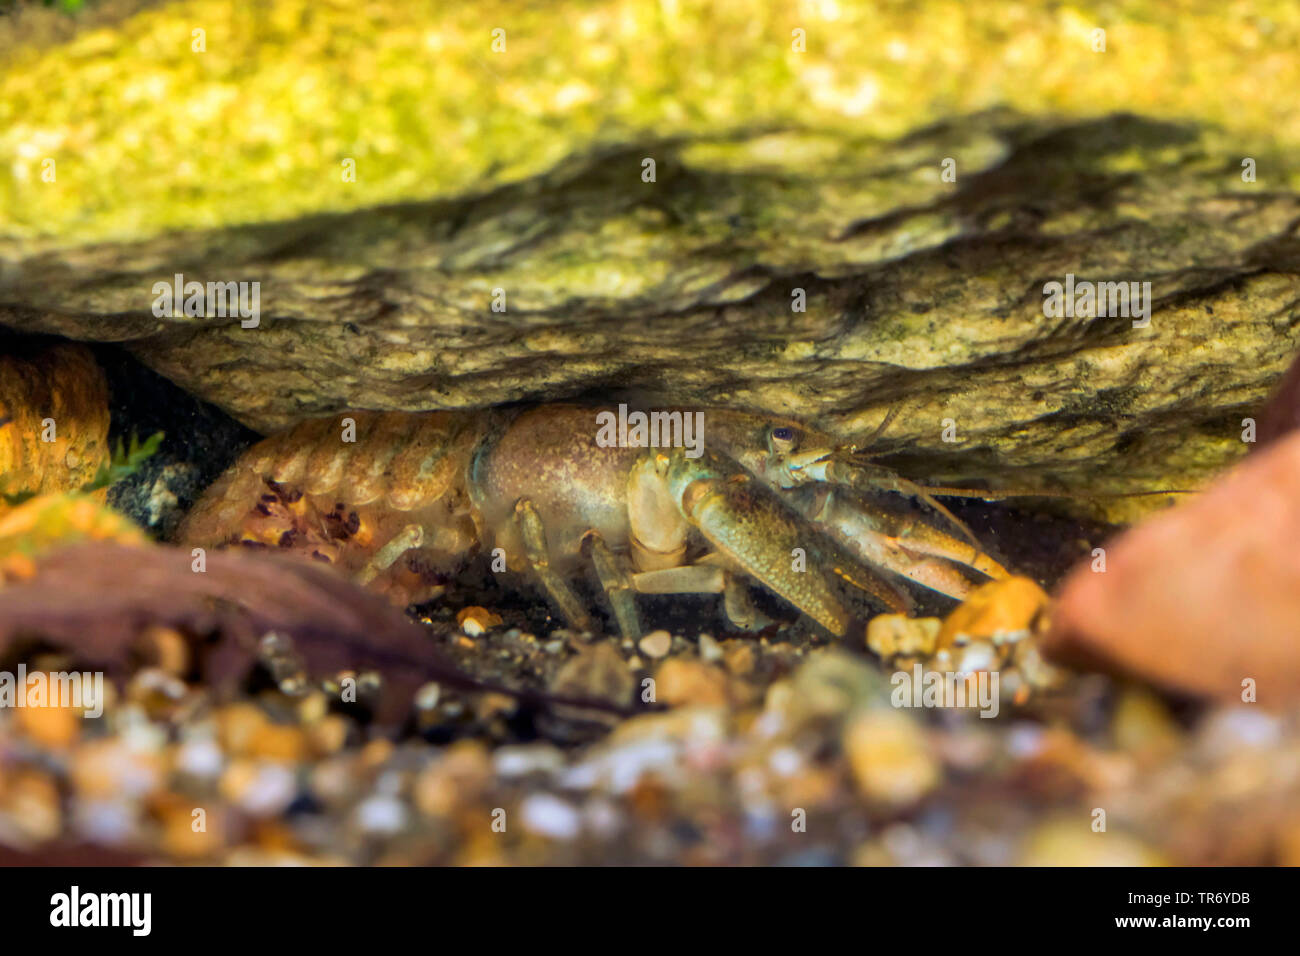 Stone crayfish, Torrent crayfish (Astacus torrentium, Austropotamobius torrentium, Potamobius torrentium, Astacus saxatilis), female with young crayfishes under the abdomen, Germany Stock Photo